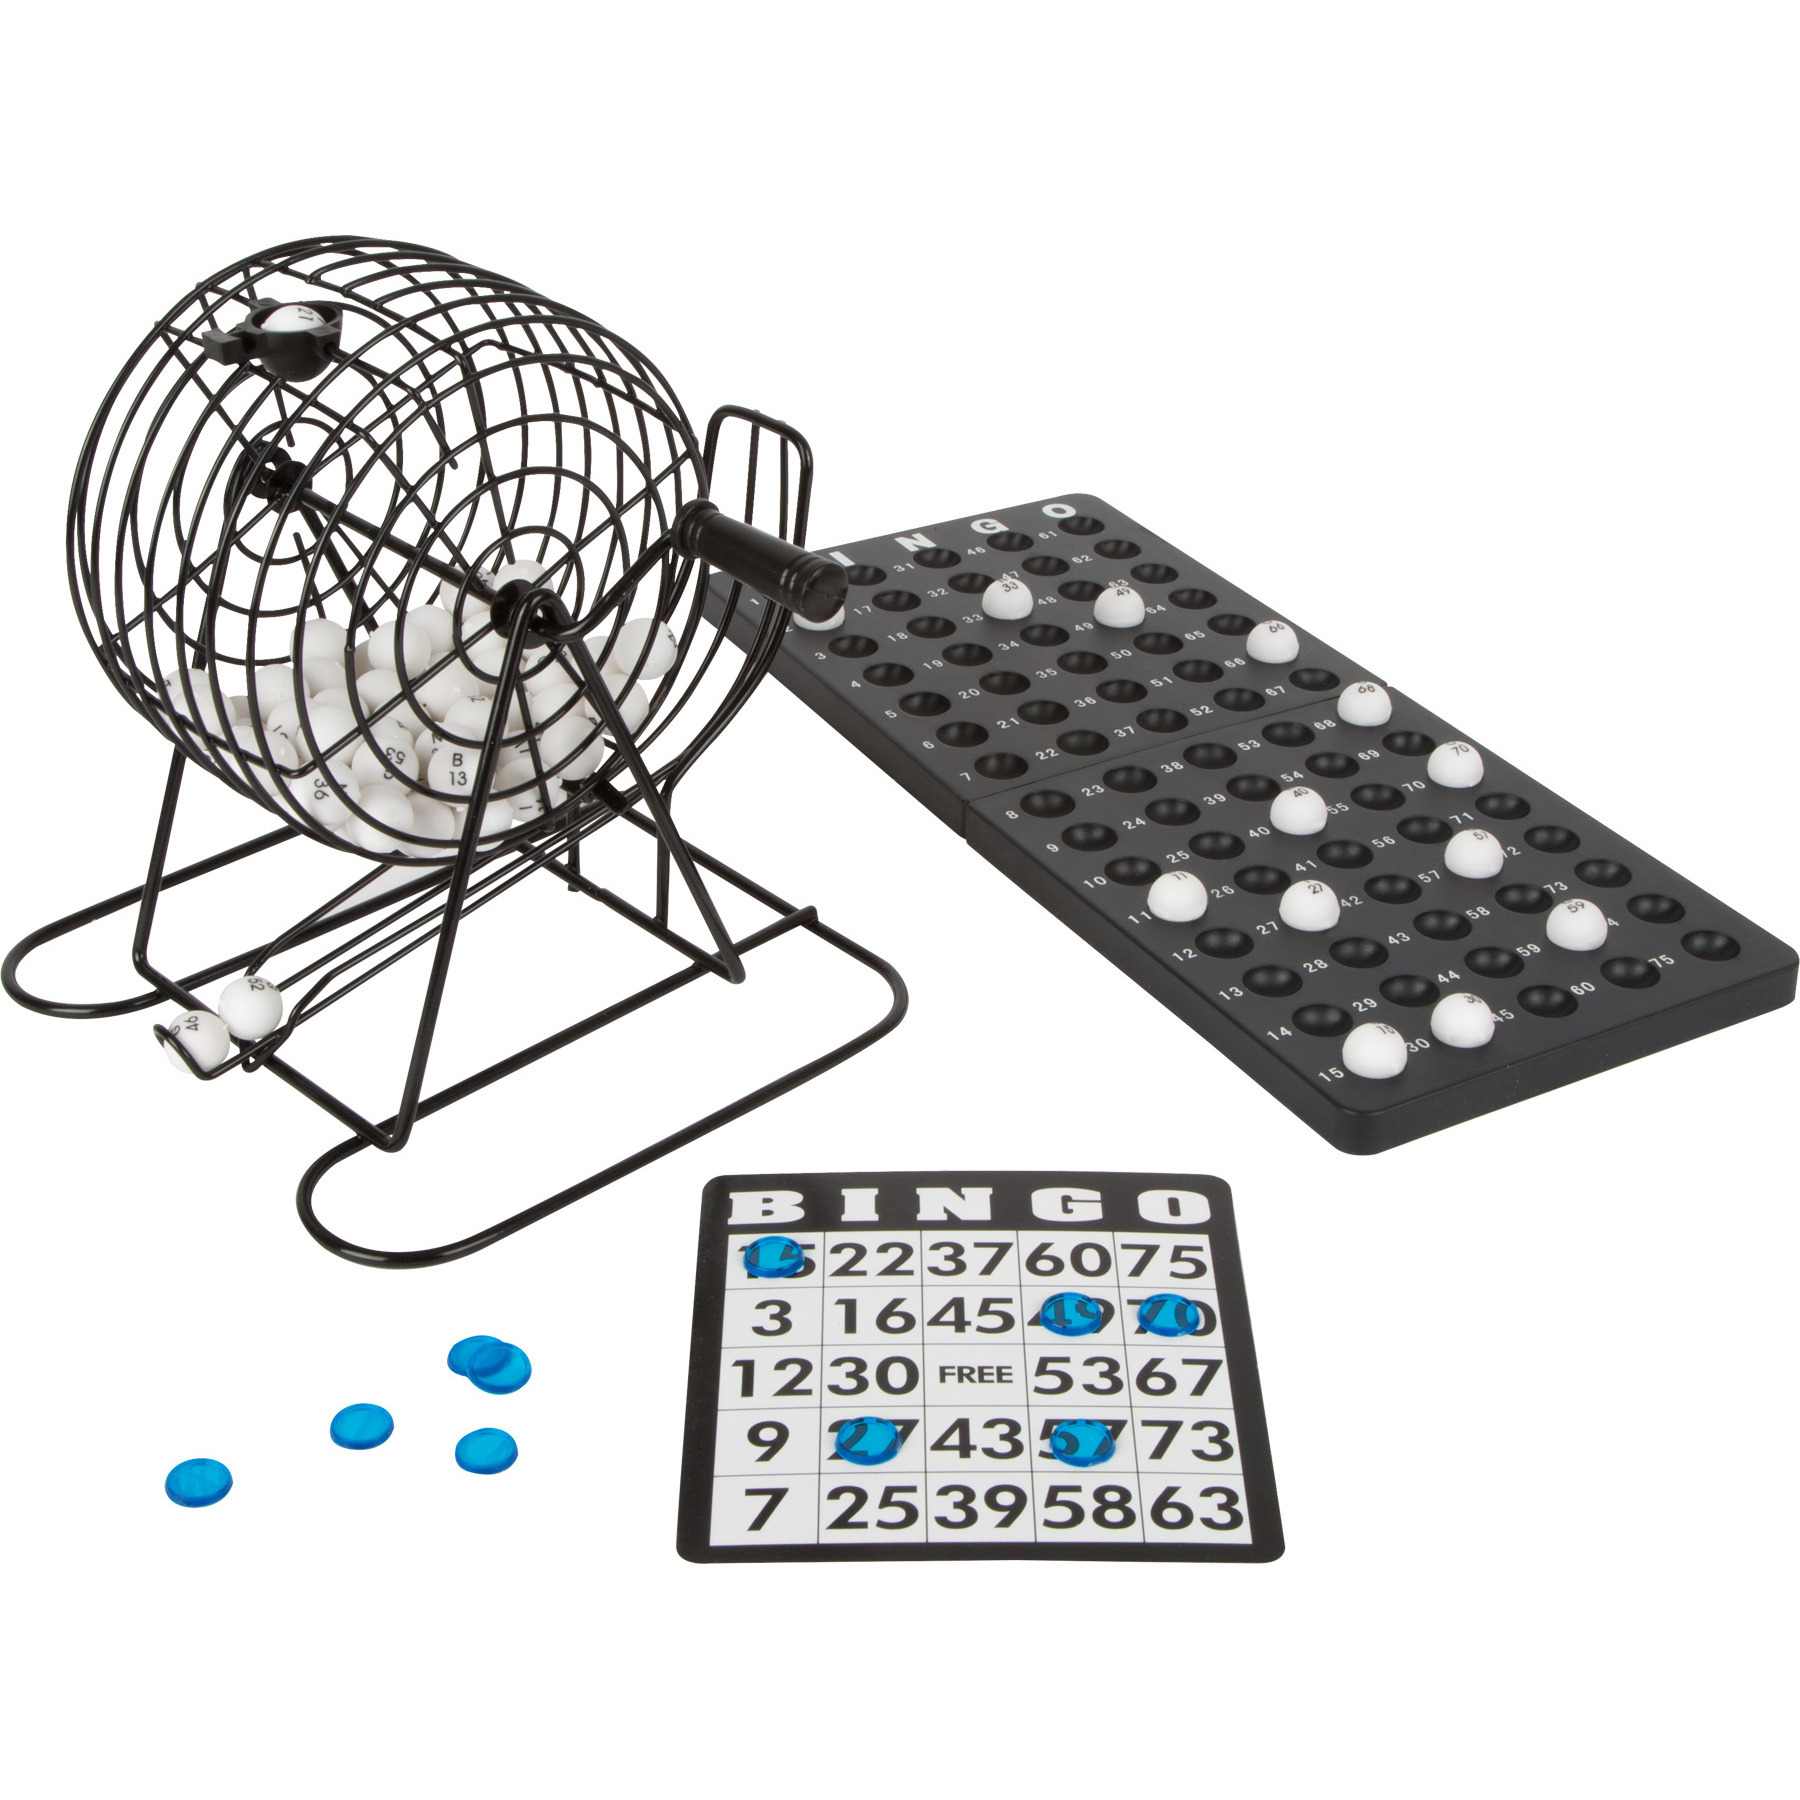 Bingospel zwart-wit 1-75 met bingomolen, 168 bingokaarten en 2 bingostiften